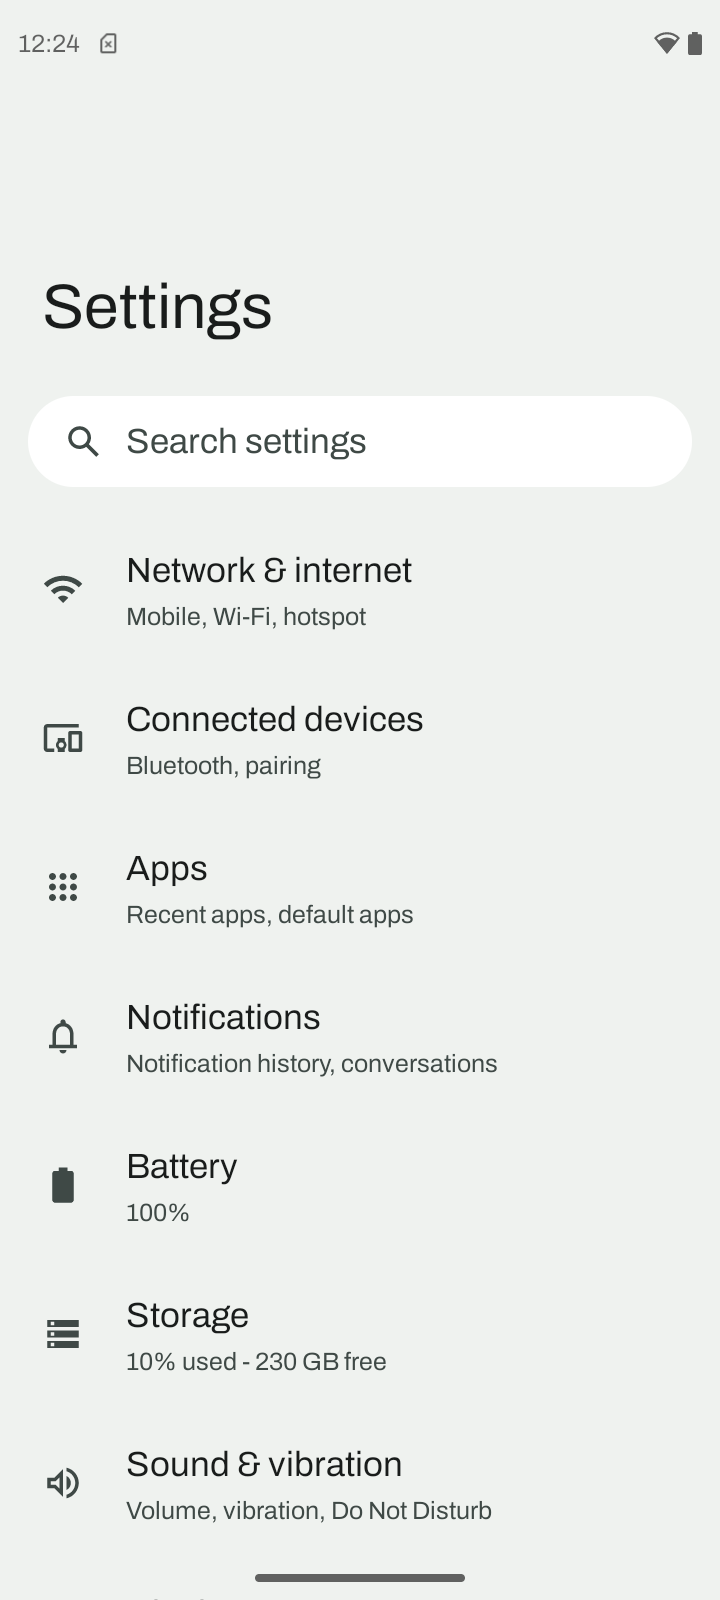 Motorola settings menu